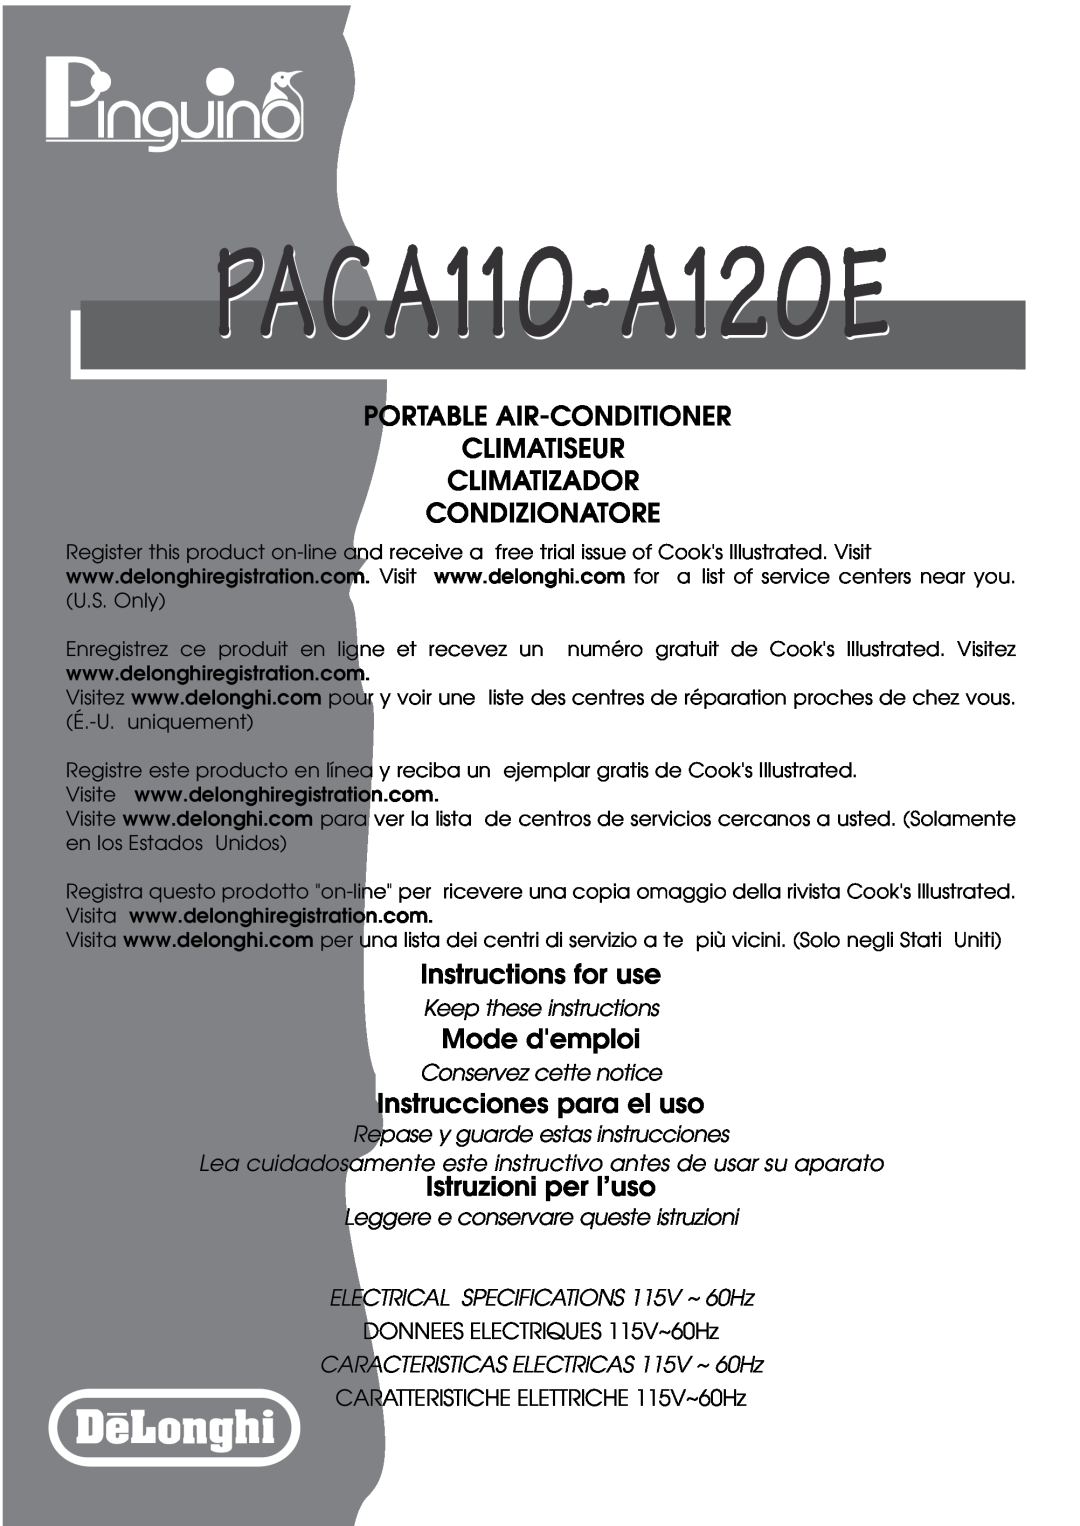 DeLonghi PACA110-A120E specifications Keep these instructions, Conservez cette notice, Repase y guarde estas instrucciones 